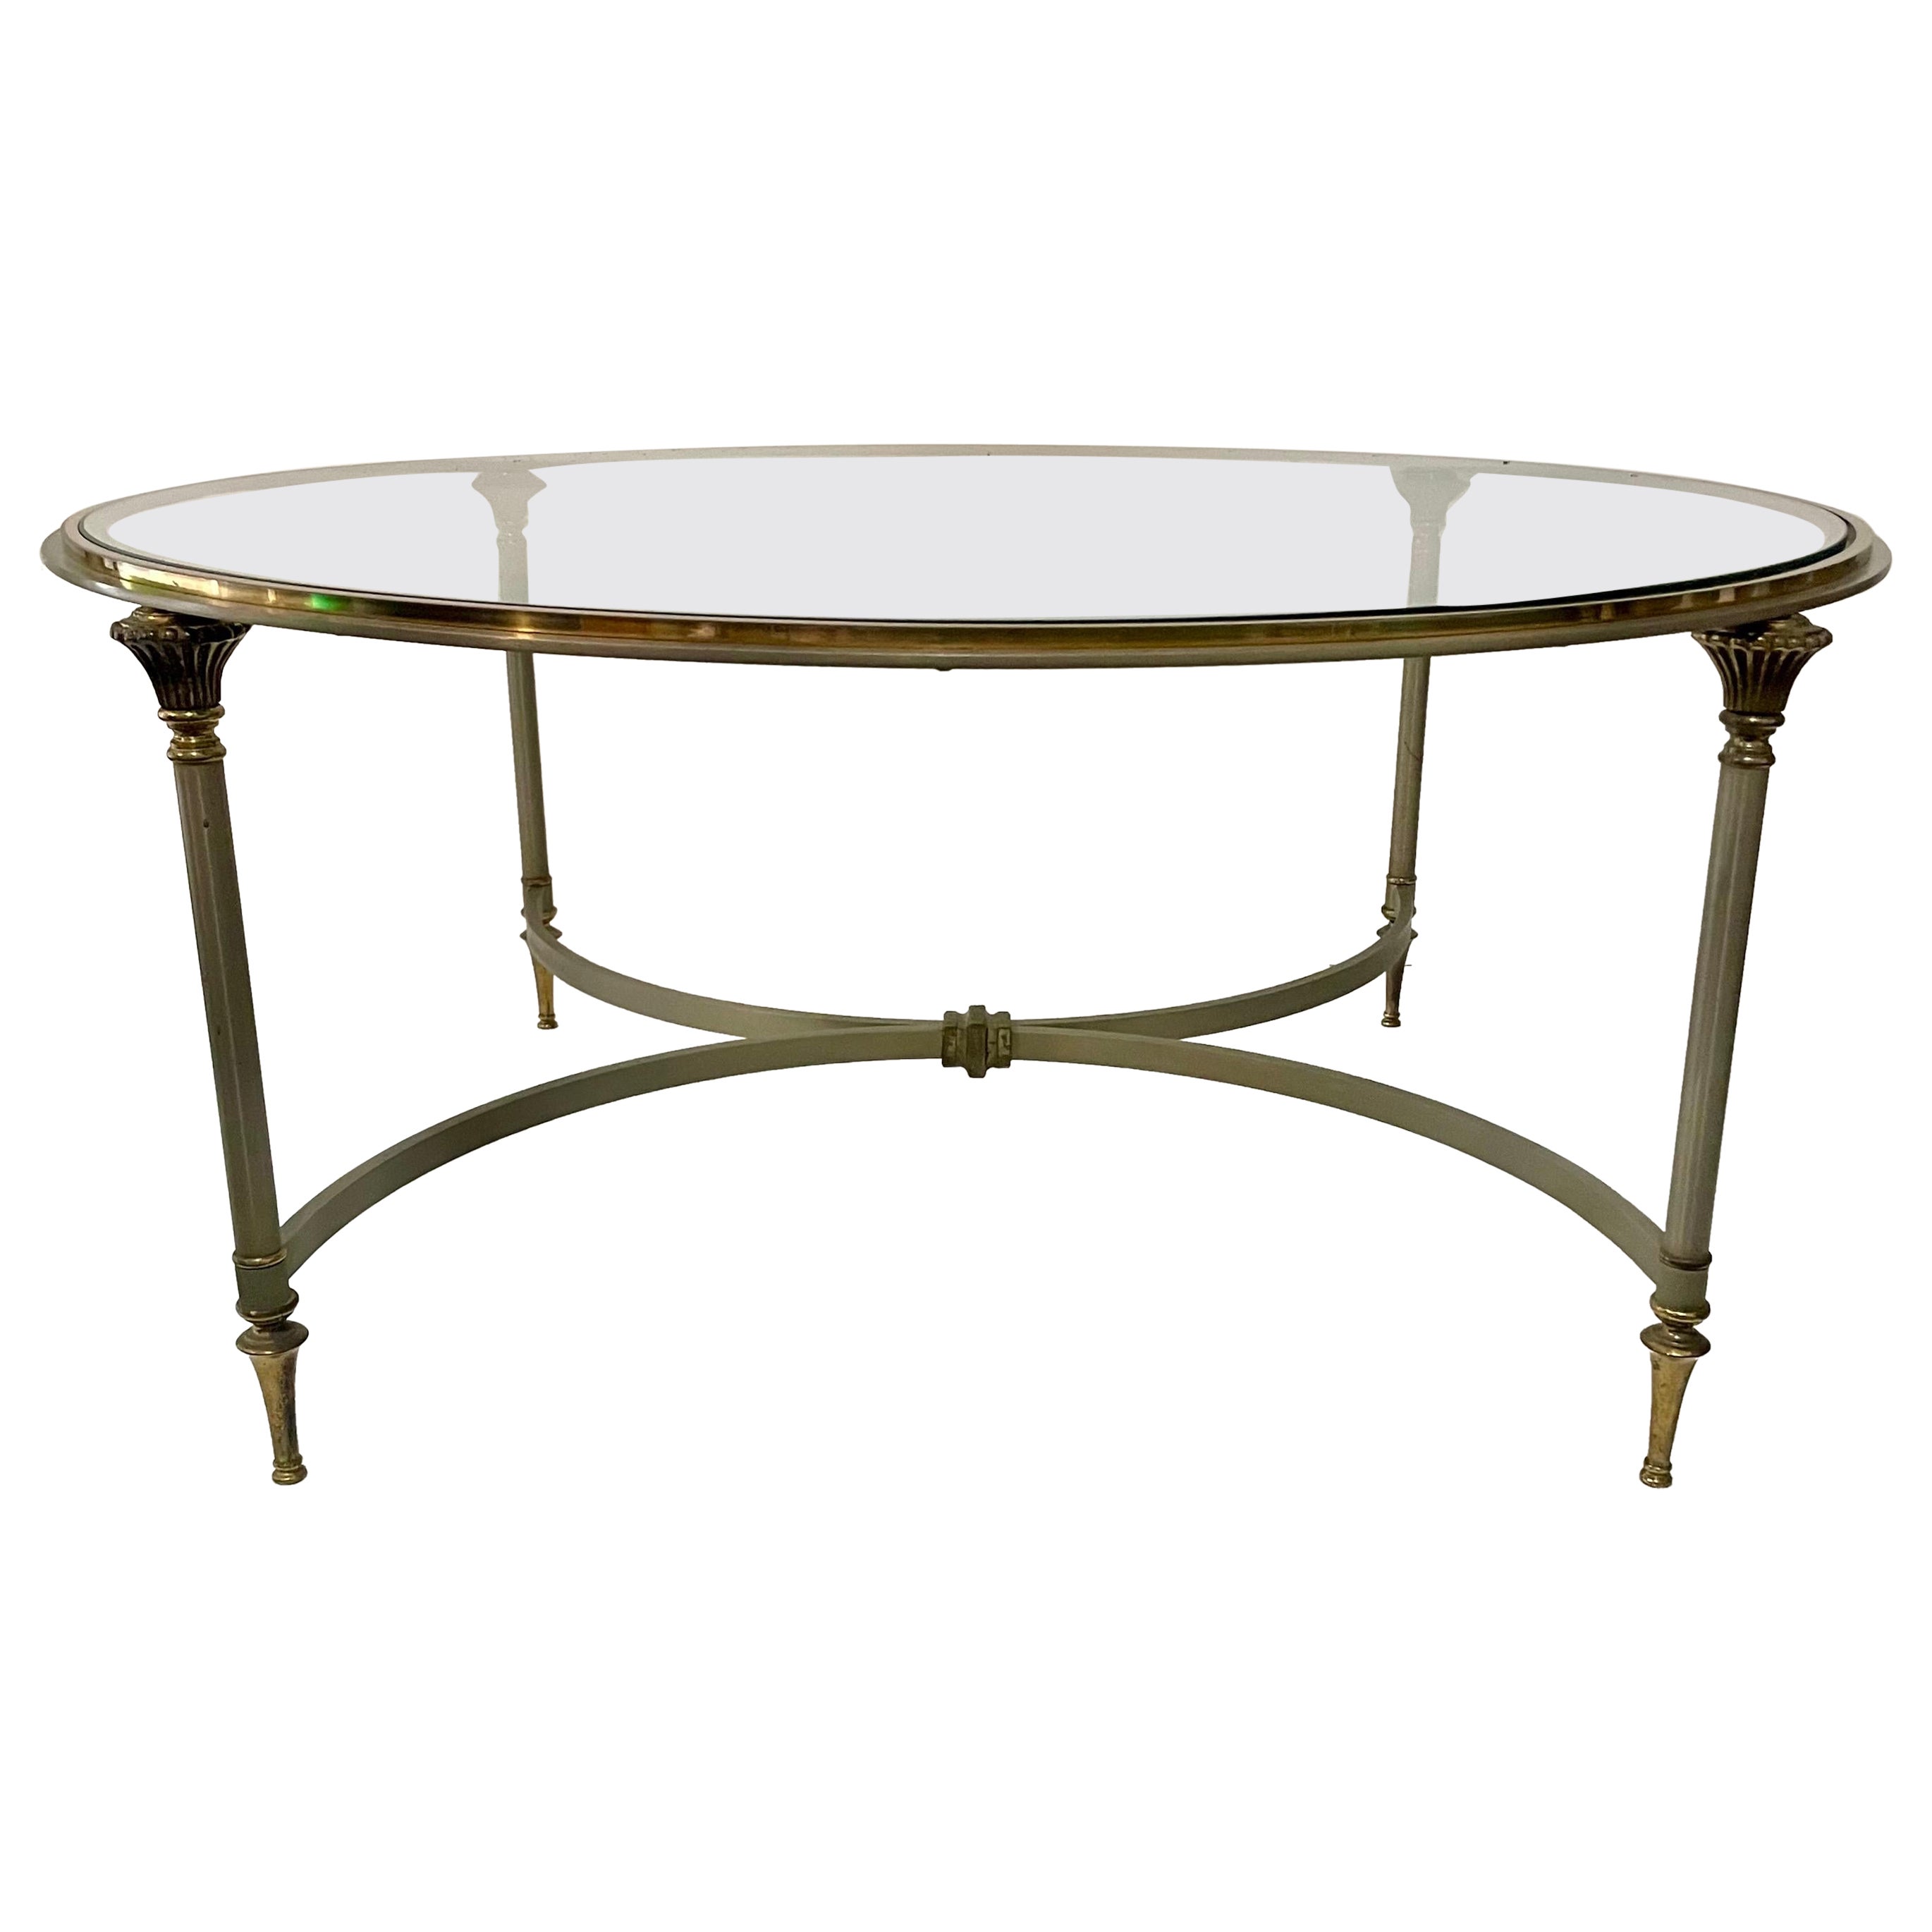  Table basse néoclassique en acier et laiton de style Maison Jansen